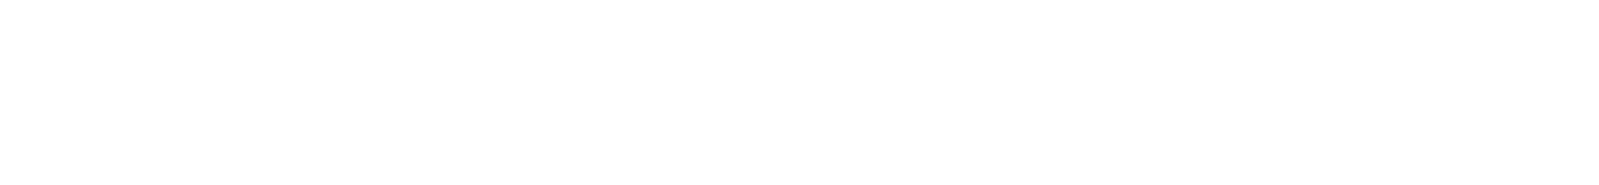 Eiken Chemical Logo groß für dunkle Hintergründe (transparentes PNG)